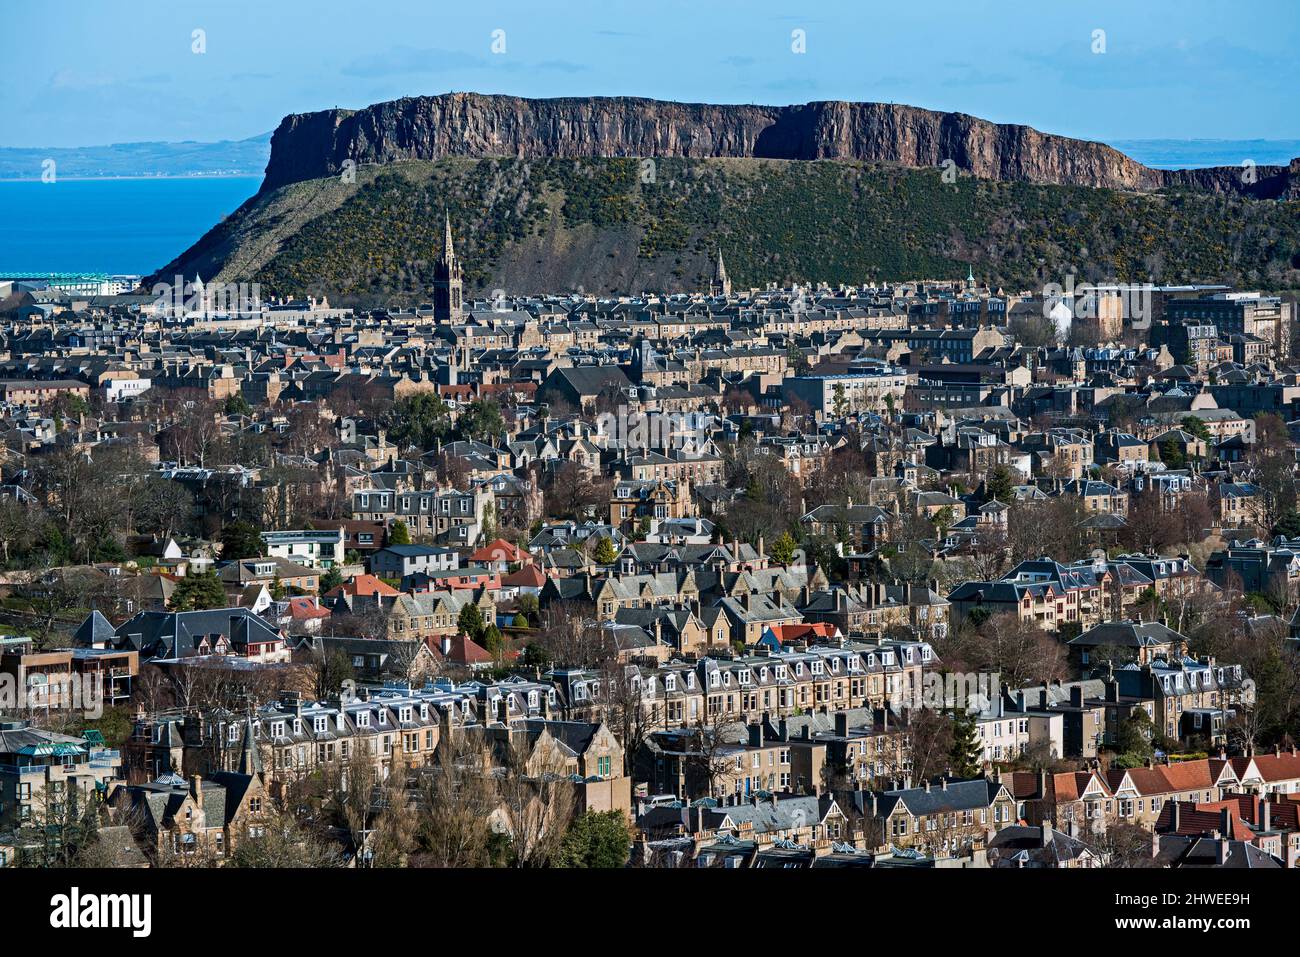 Wohnhäuser in Süd-Edinburgh mit Salisbury Crags im Hintergrund, aufgenommen aus Blackford Hill, Edinburgh, Schottland, Großbritannien. Stockfoto